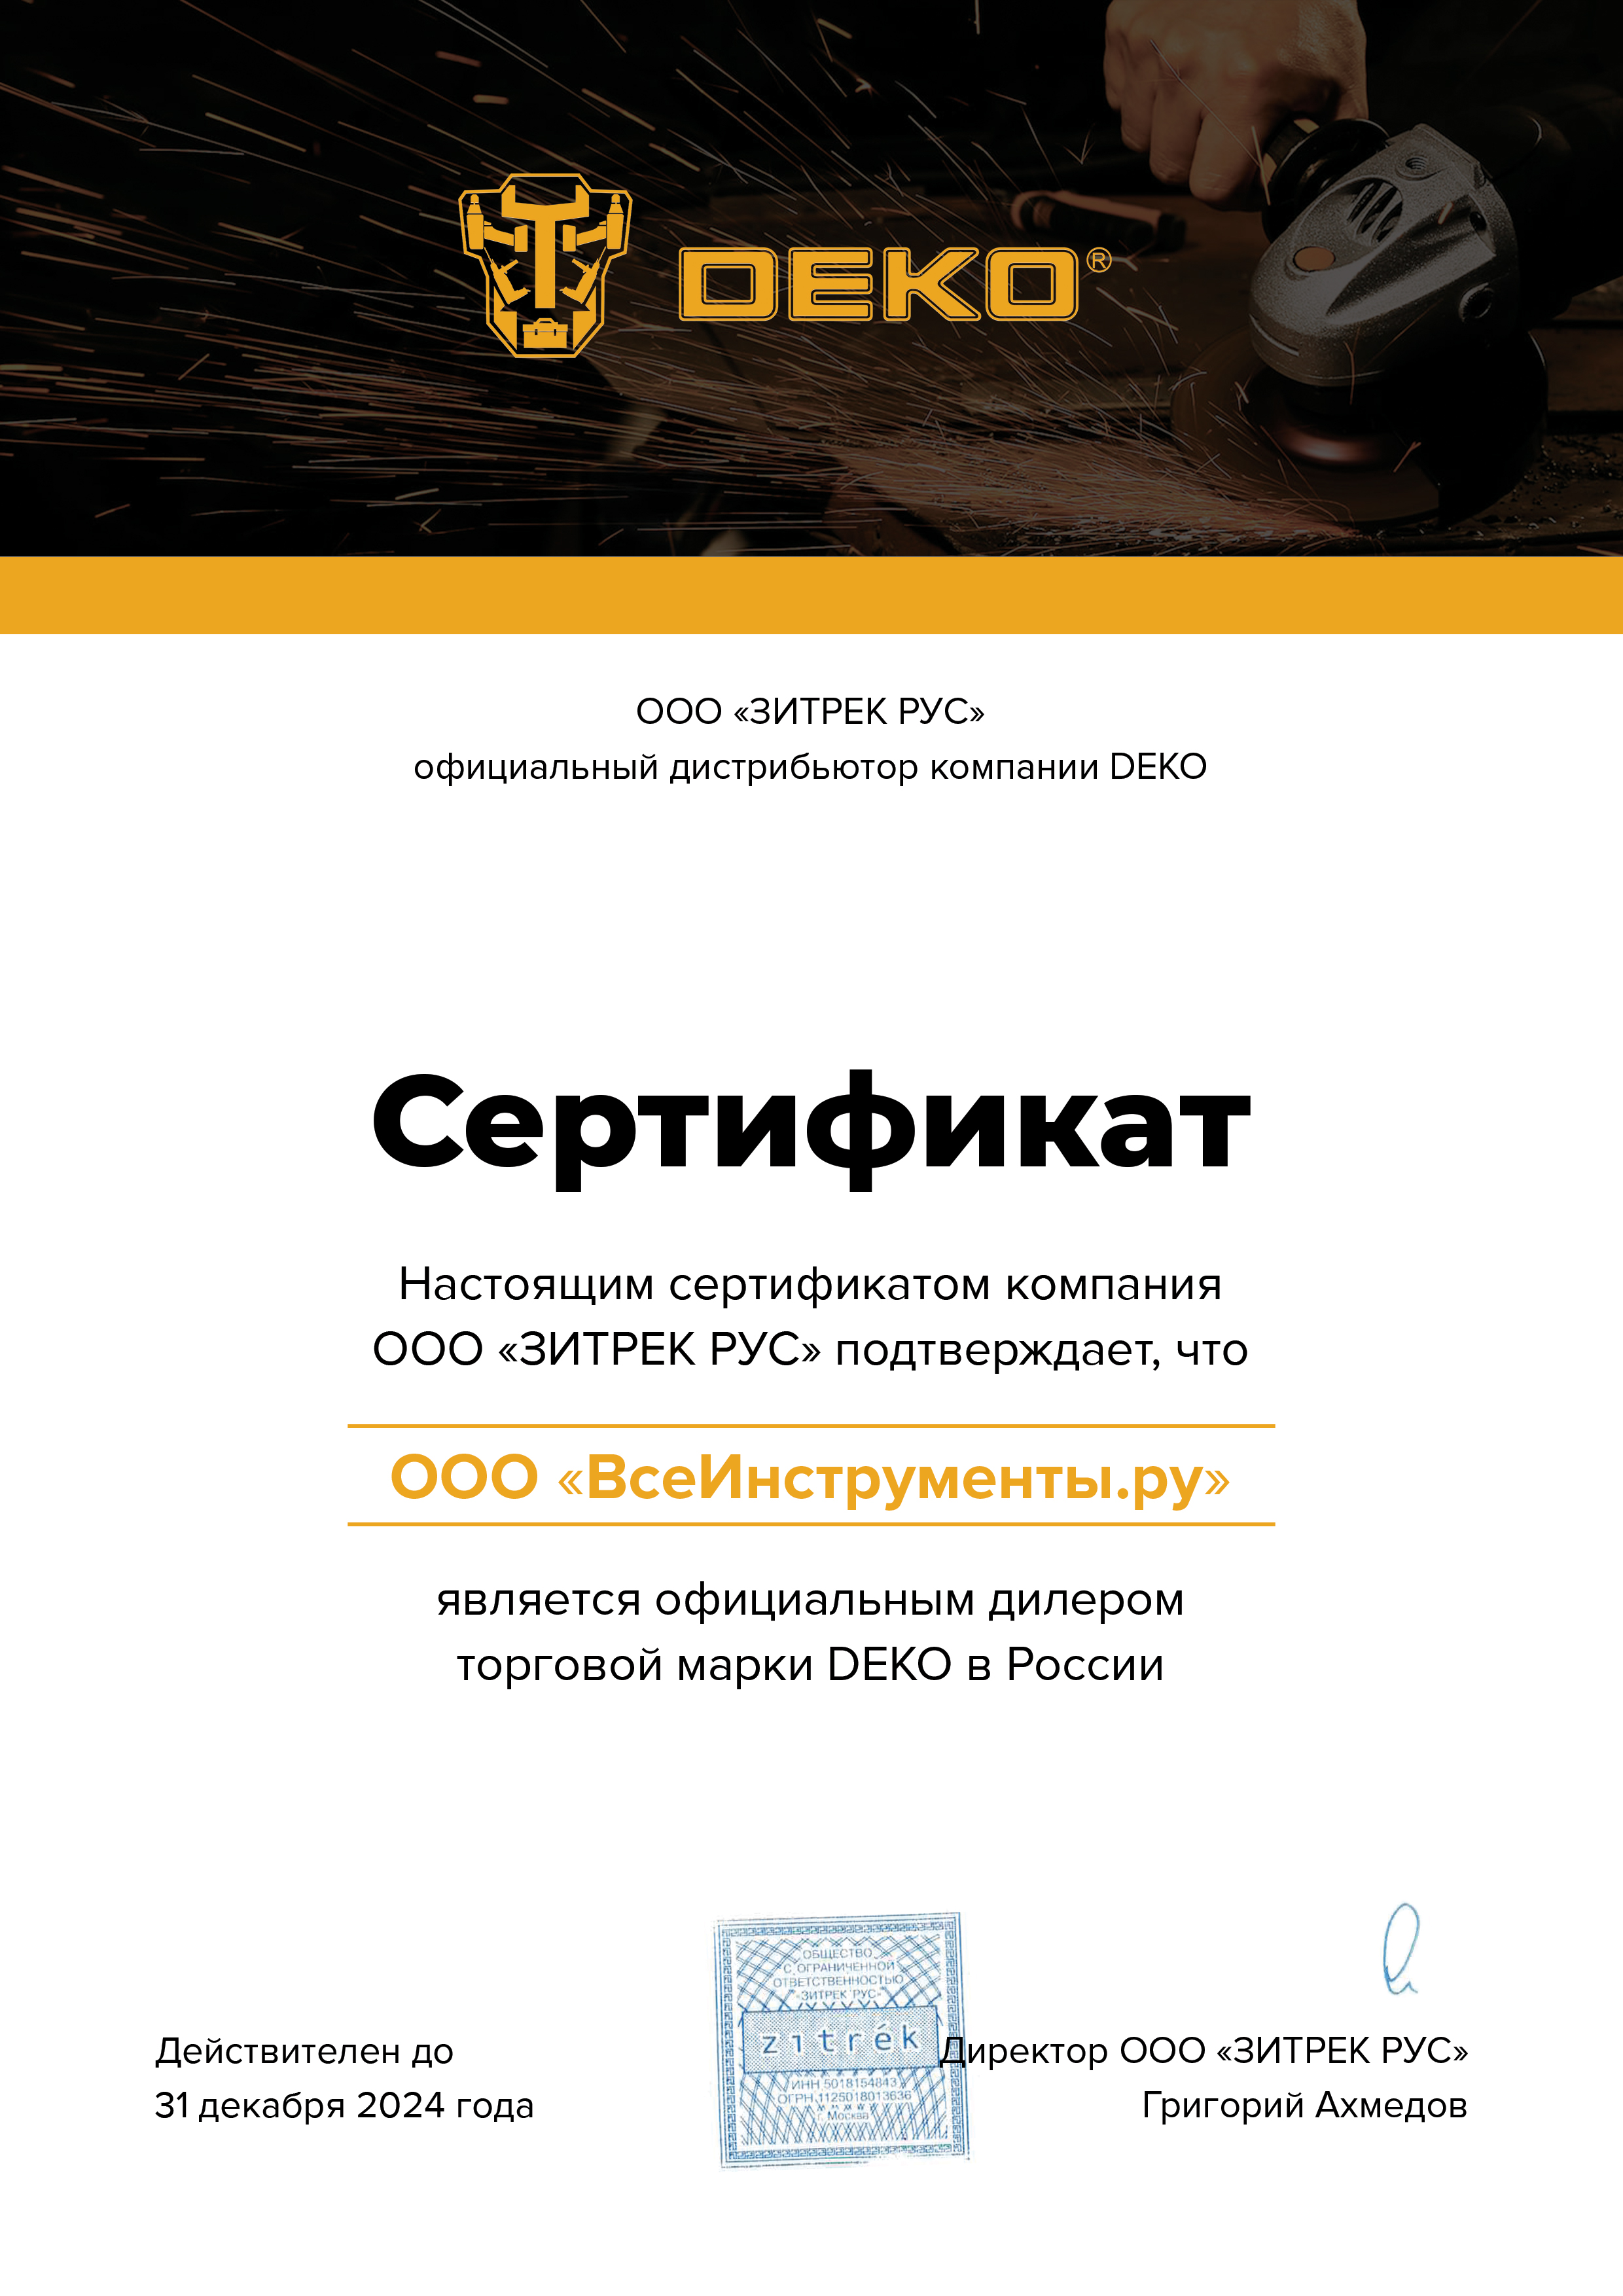 Электрический краскопульт DEKO DKSG55K1 HVLP 018-1043 - выгодная цена,  отзывы, характеристики, 2 видео, фото - купить в Москве и РФ